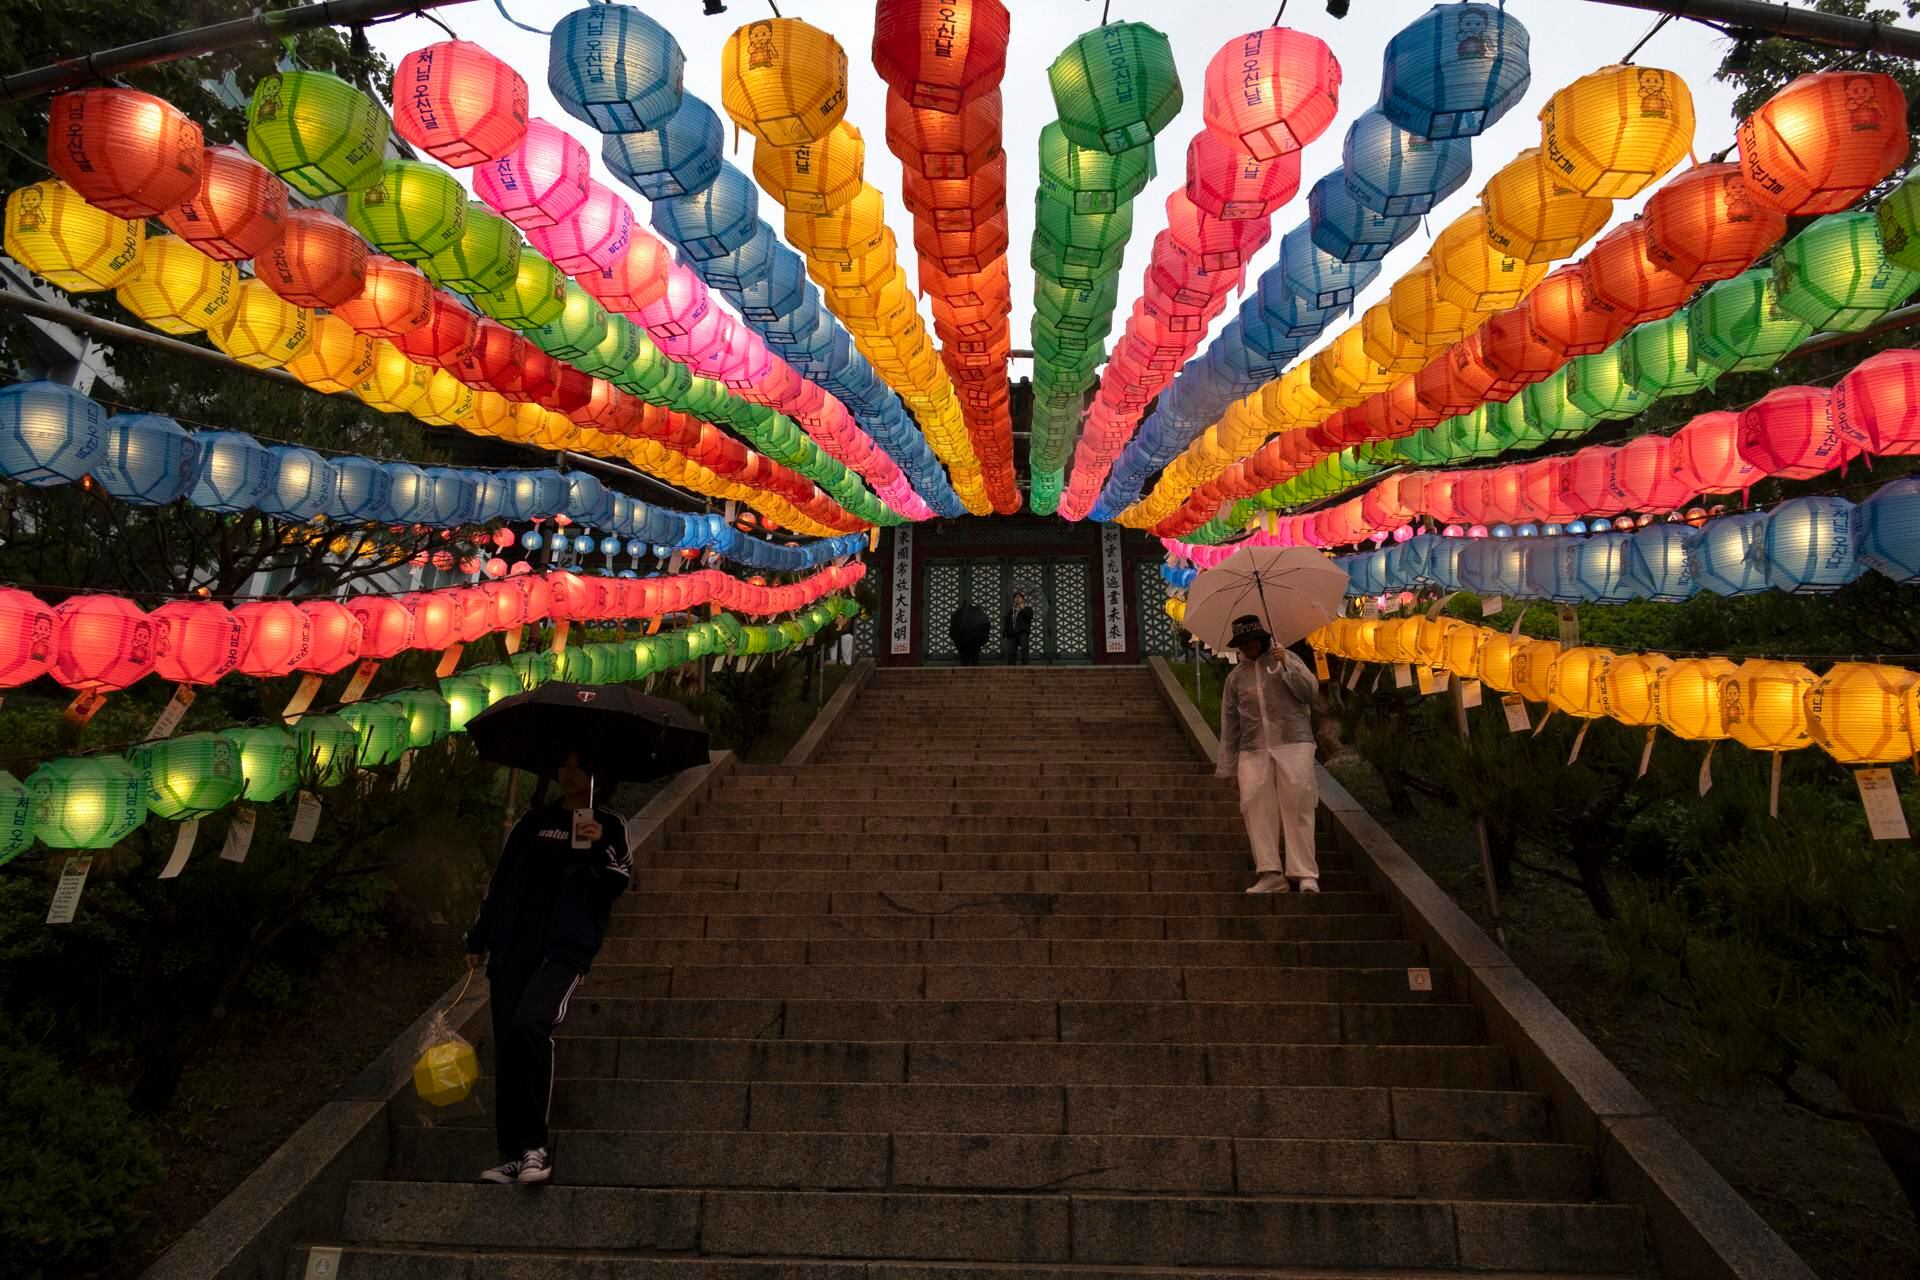 El desfile de los faroles de loto este año se celebra  el 11 de mayo desde las 7:00 p.m. saliendo desde la Puerta Heunginjimun (Dongdaemun), pasando por las estaciones de metro de Dongdaemun, Jongno 5(o)-ga, Jongno 3(sam)-ga y Jonggak, terminando en el templo Jogyesa. (Corea del Sur, Seúl) EFE/EPA/JEON HEON-KYUN